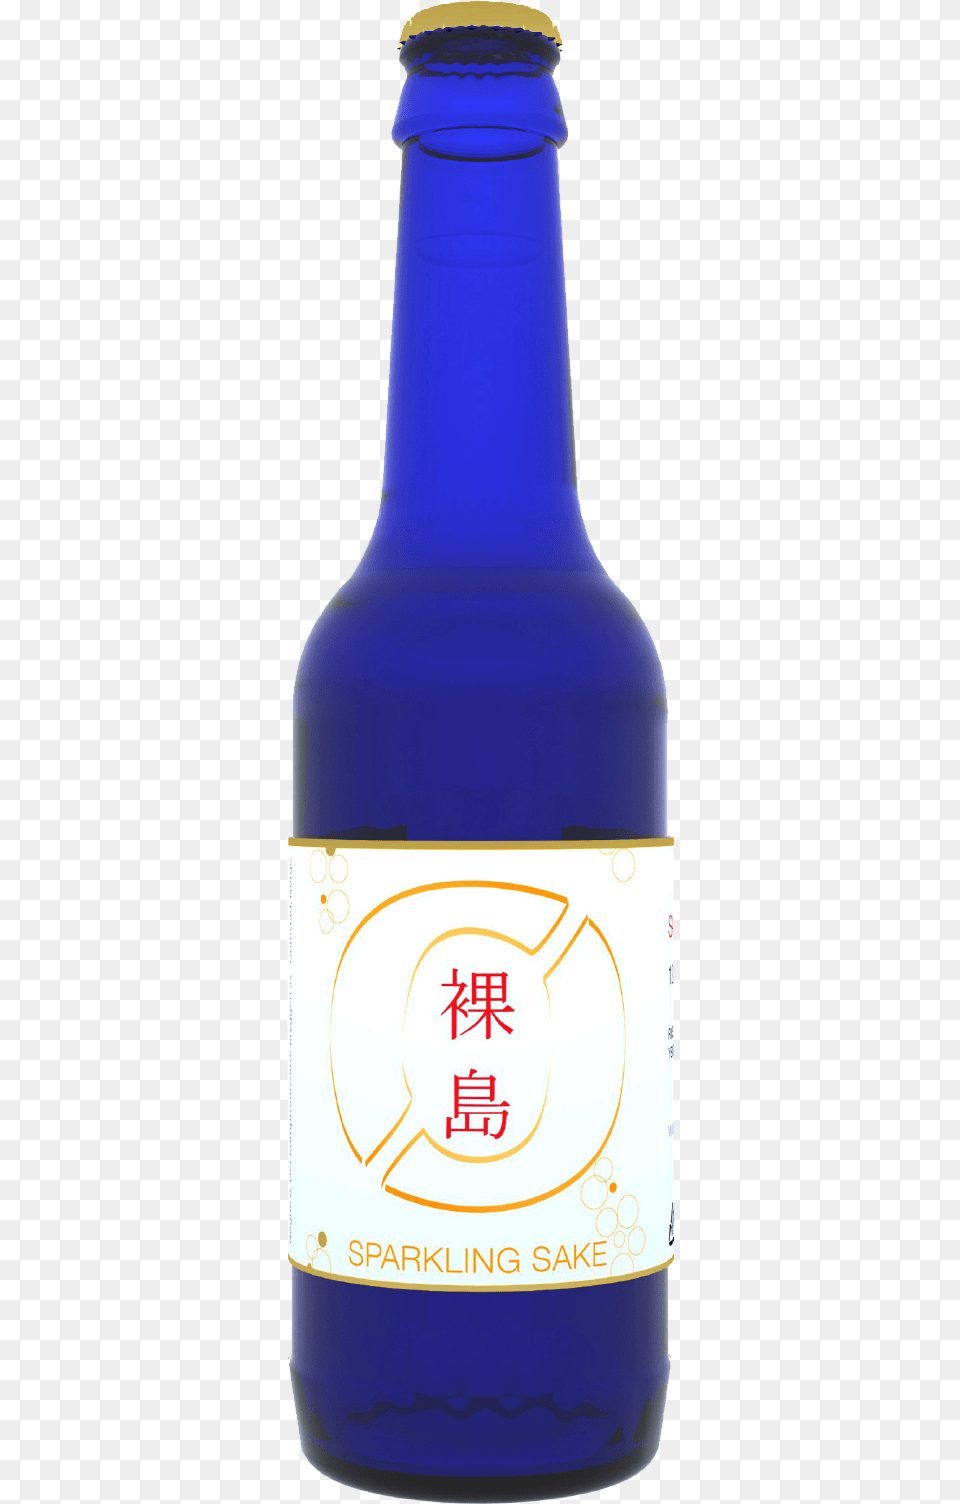 Ngne Sparkling Sake, Alcohol, Beer, Beverage, Bottle Png Image